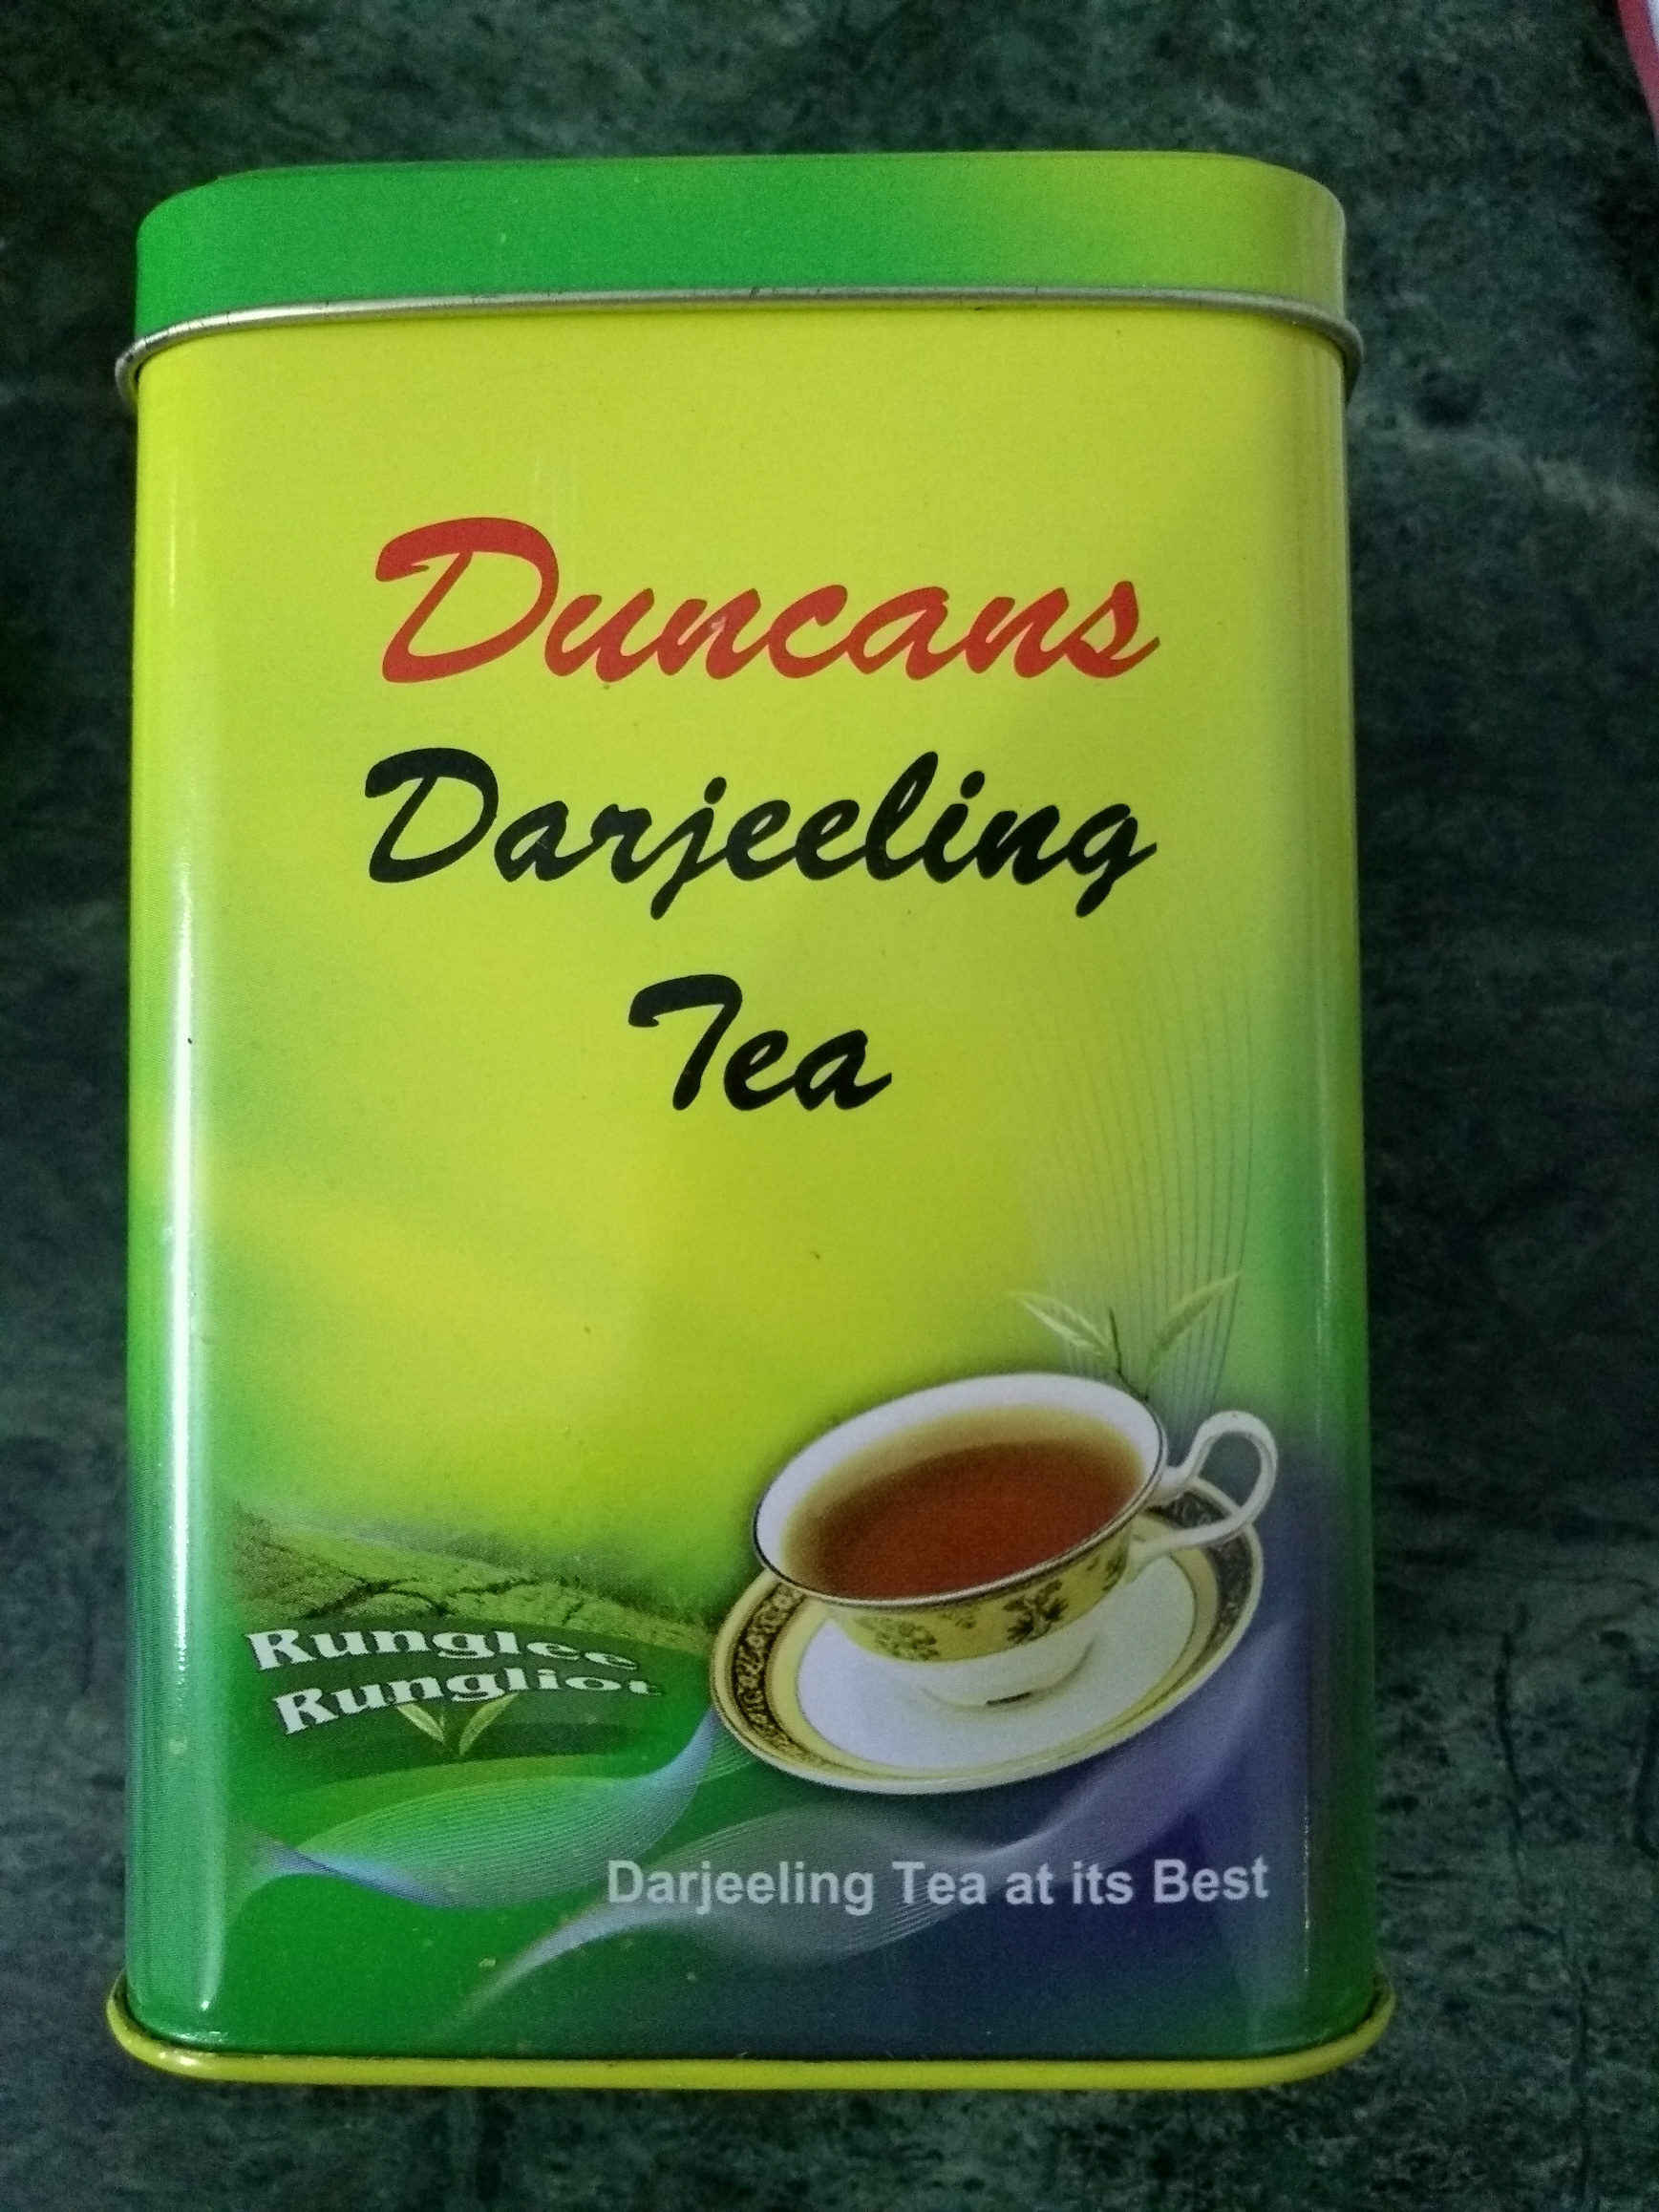 Darjeeling Tea - Produit - en